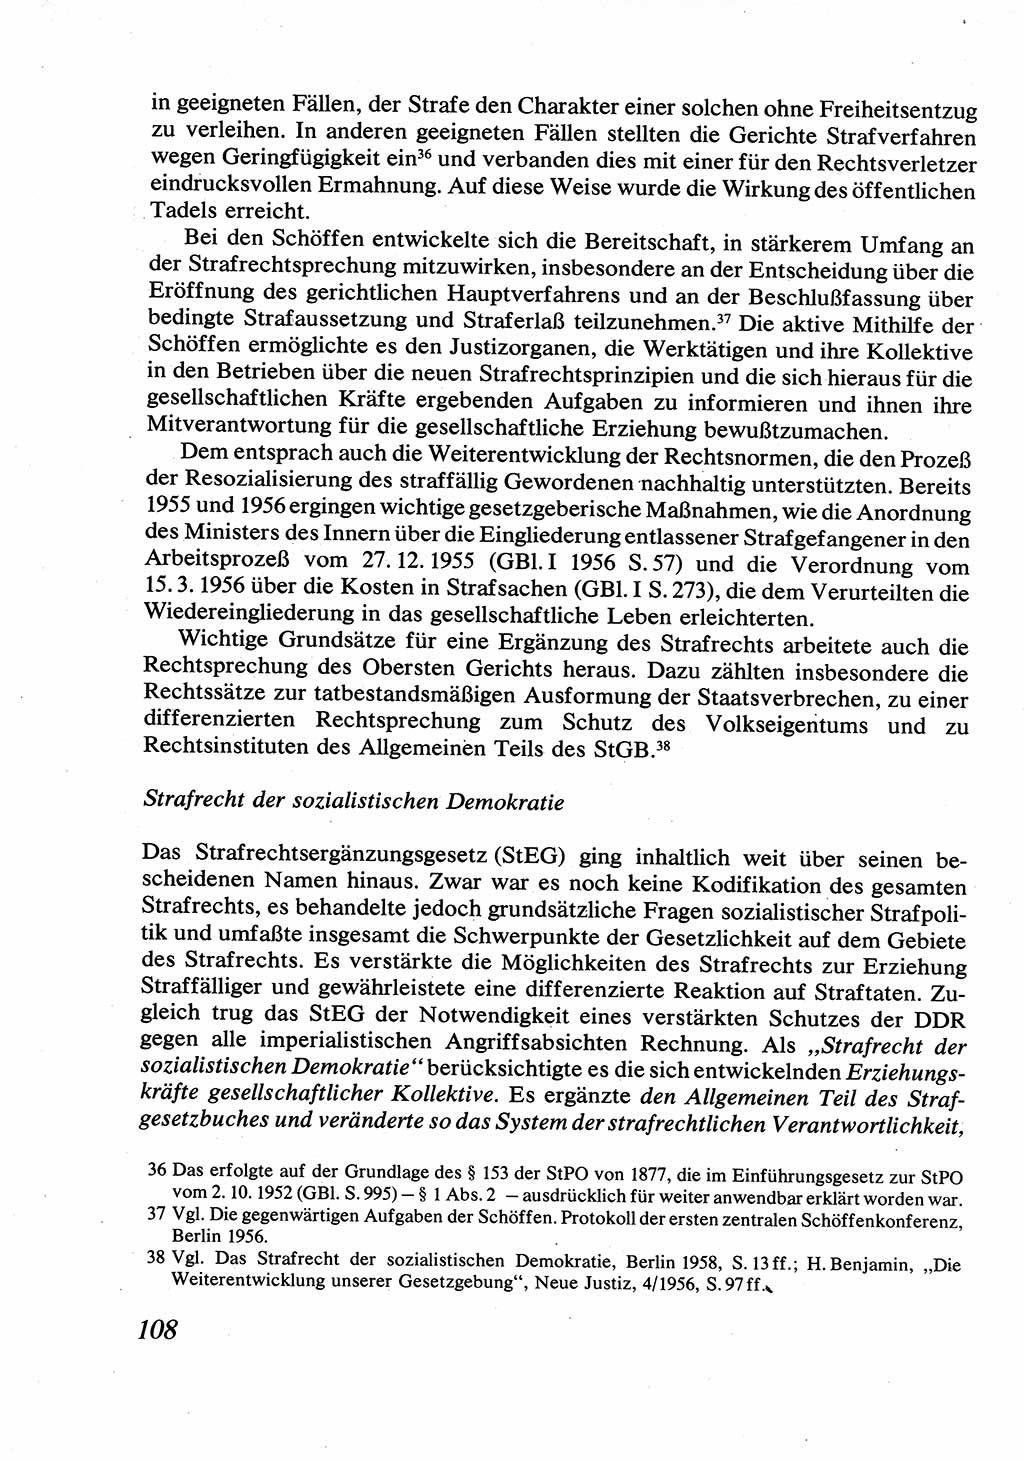 Strafrecht [Deutsche Demokratische Republik (DDR)], Allgemeiner Teil, Lehrbuch 1976, Seite 108 (Strafr. DDR AT Lb. 1976, S. 108)